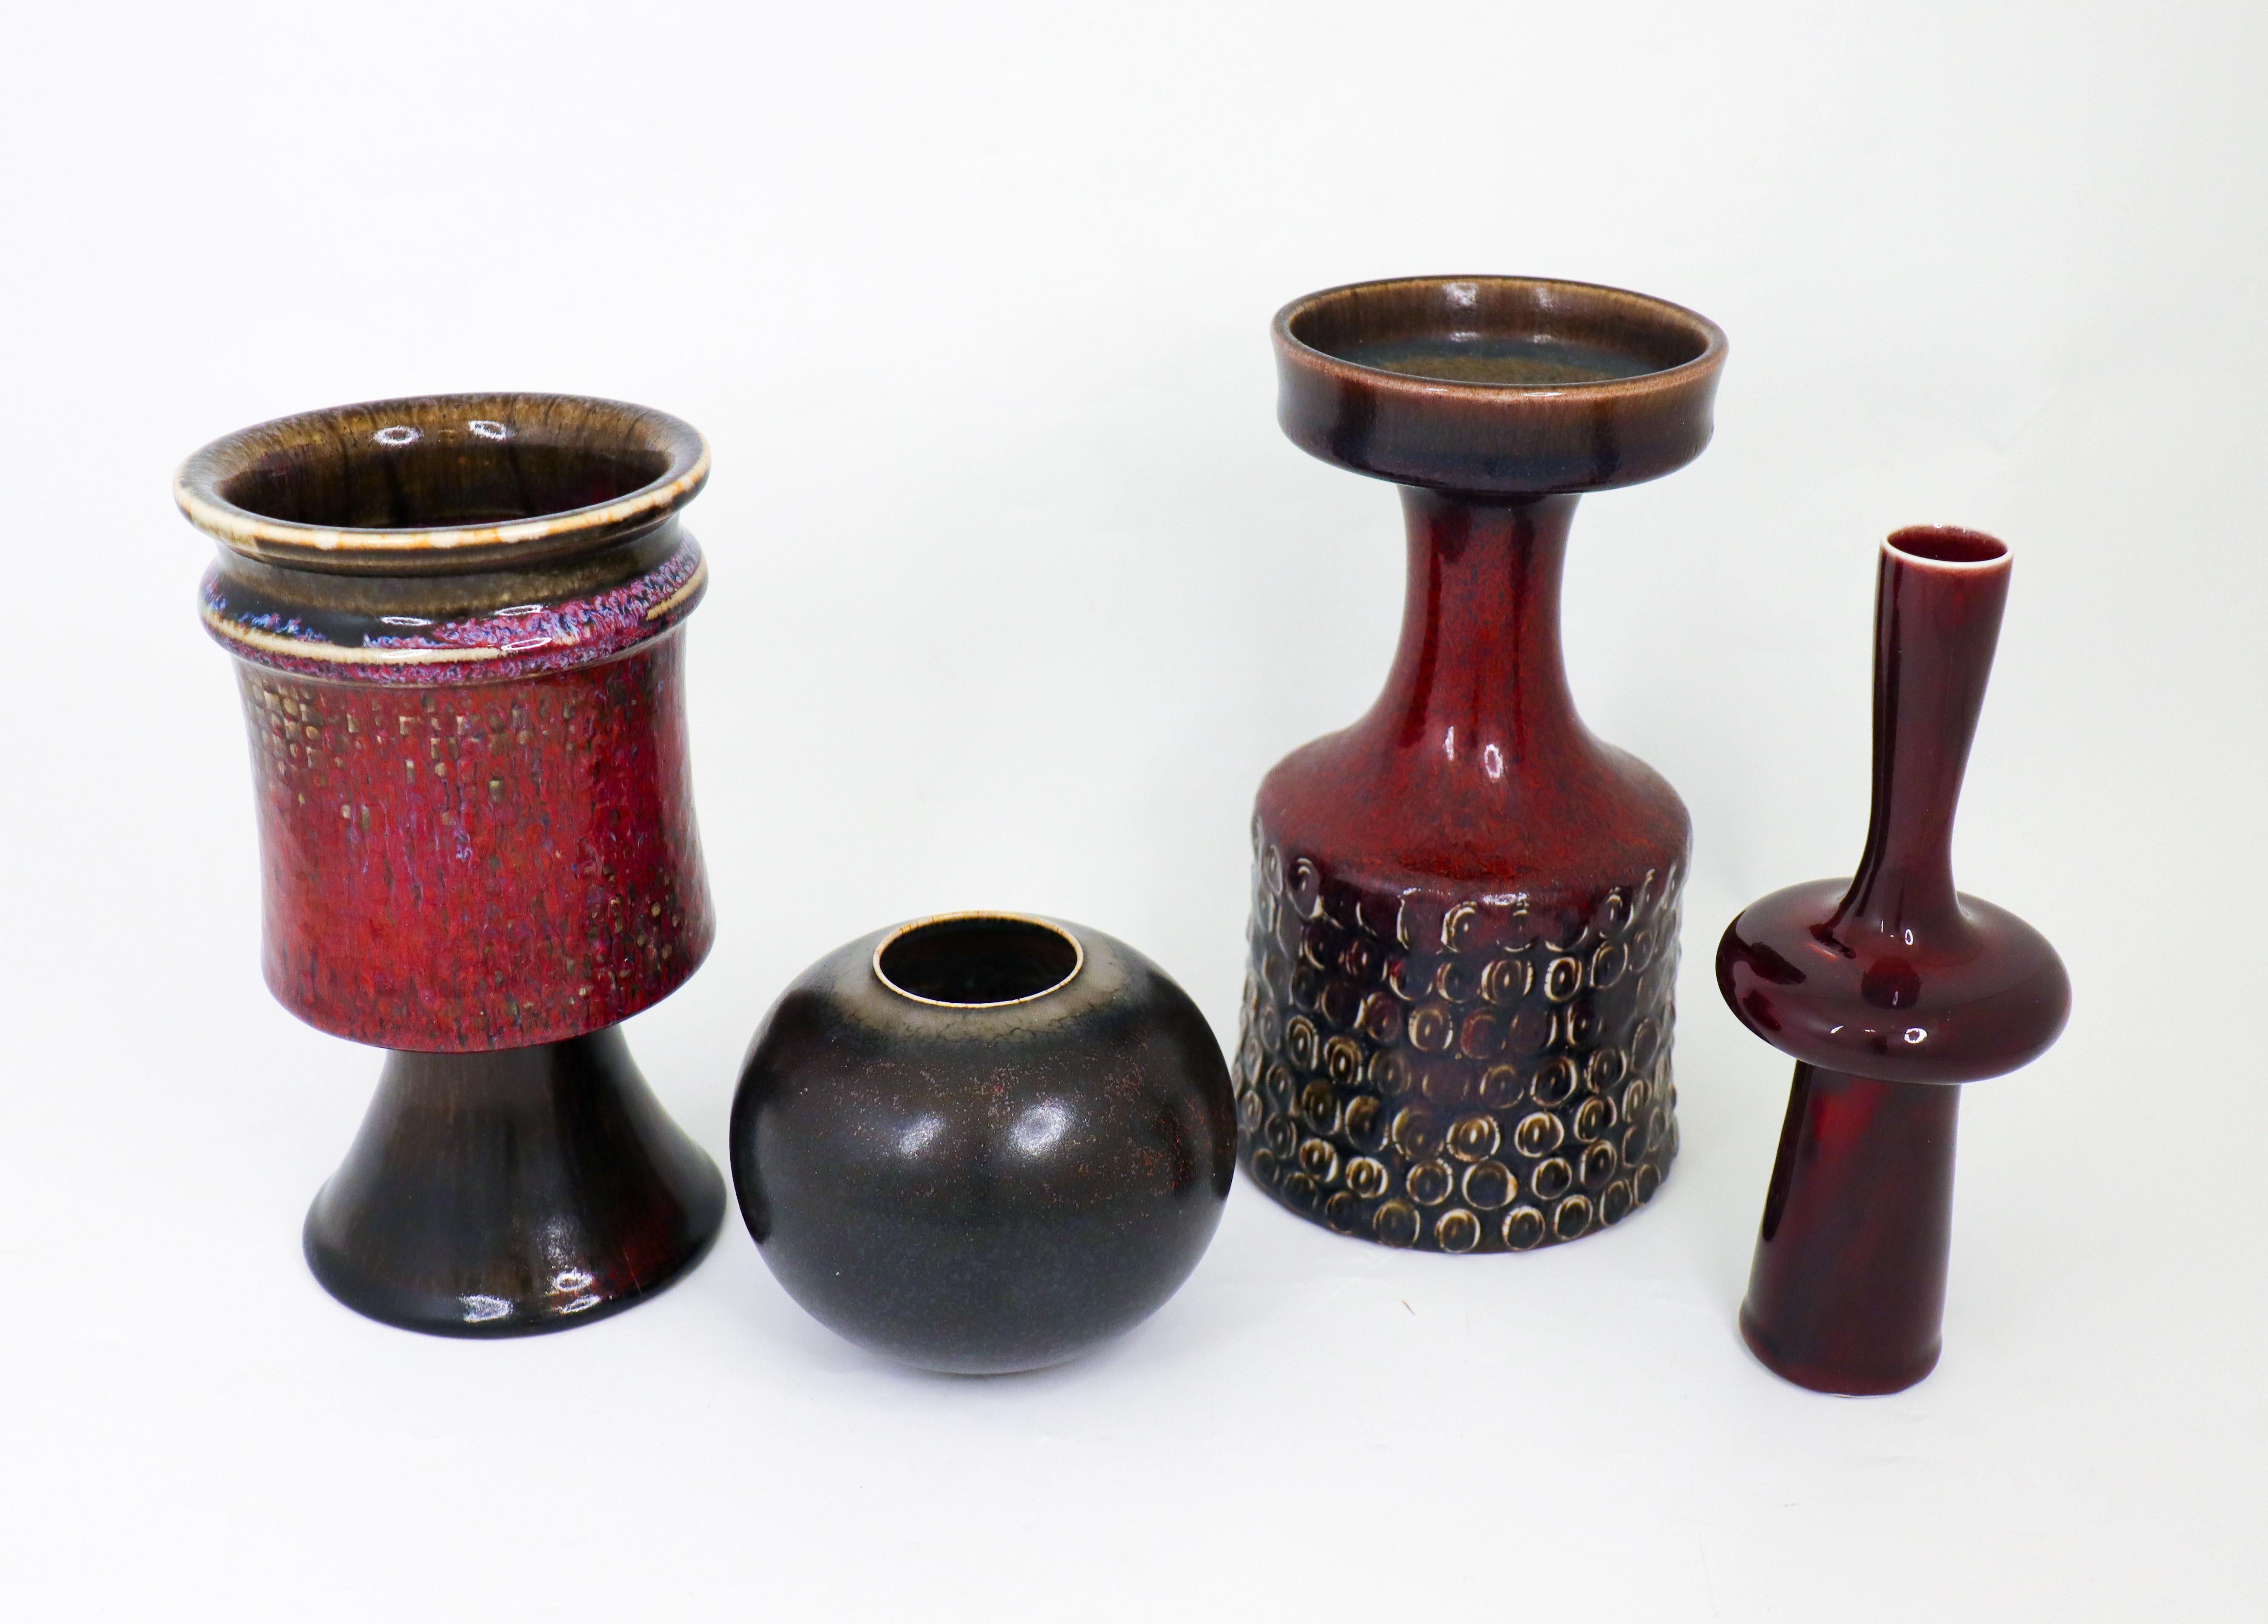 Un groupe de quatre vases conçus par Stig Lindberg à Gustavsberg dans les années 1950. Les vases mesurent entre 9,5 et 20,5 cm de haut et sont en excellent état. Ils sont tous marqués comme étant de première qualité. 

Carl-Harry Stålhane est l'un